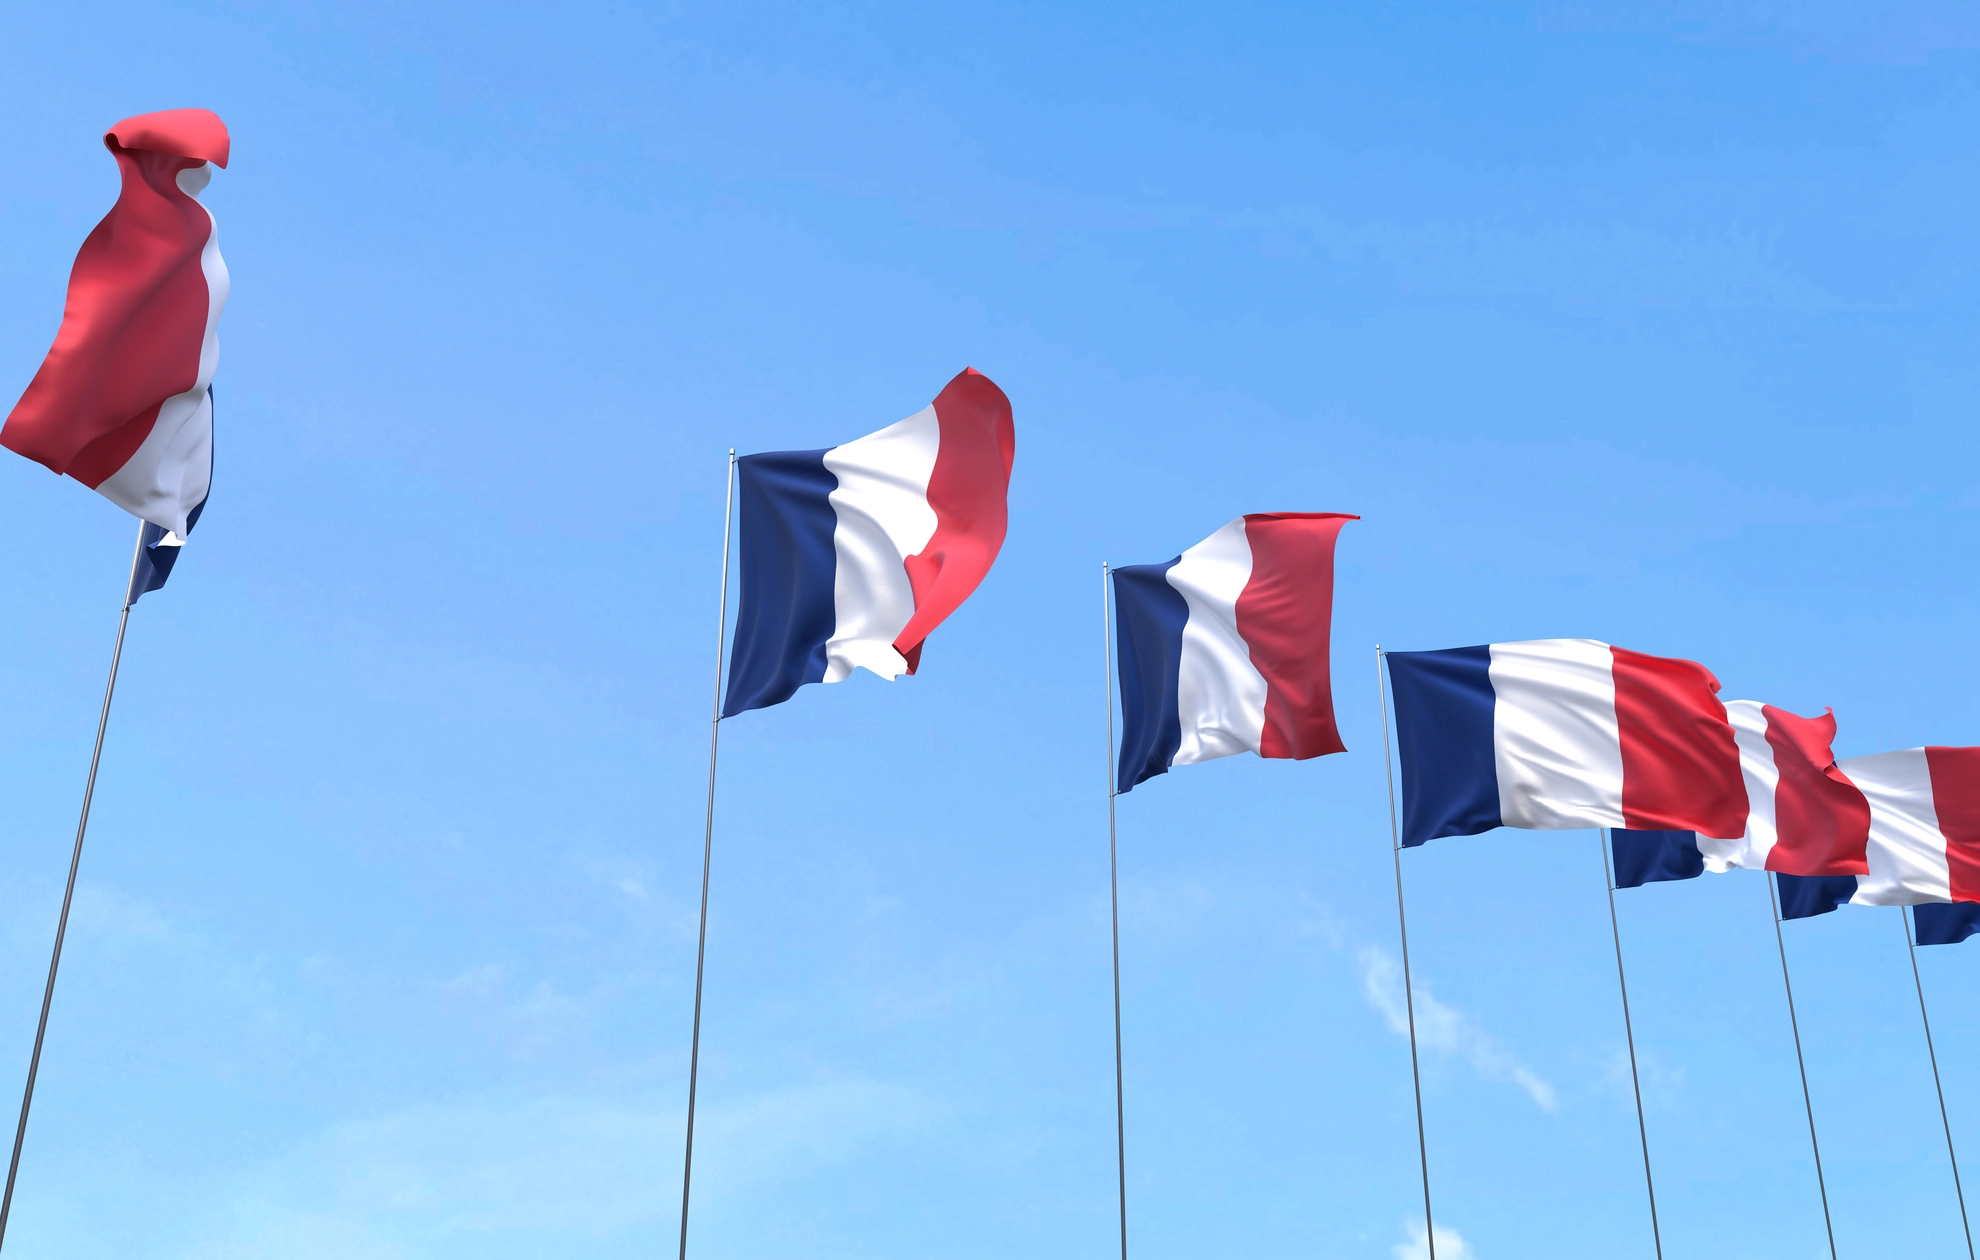 france-flag-waving-blue-sky-background